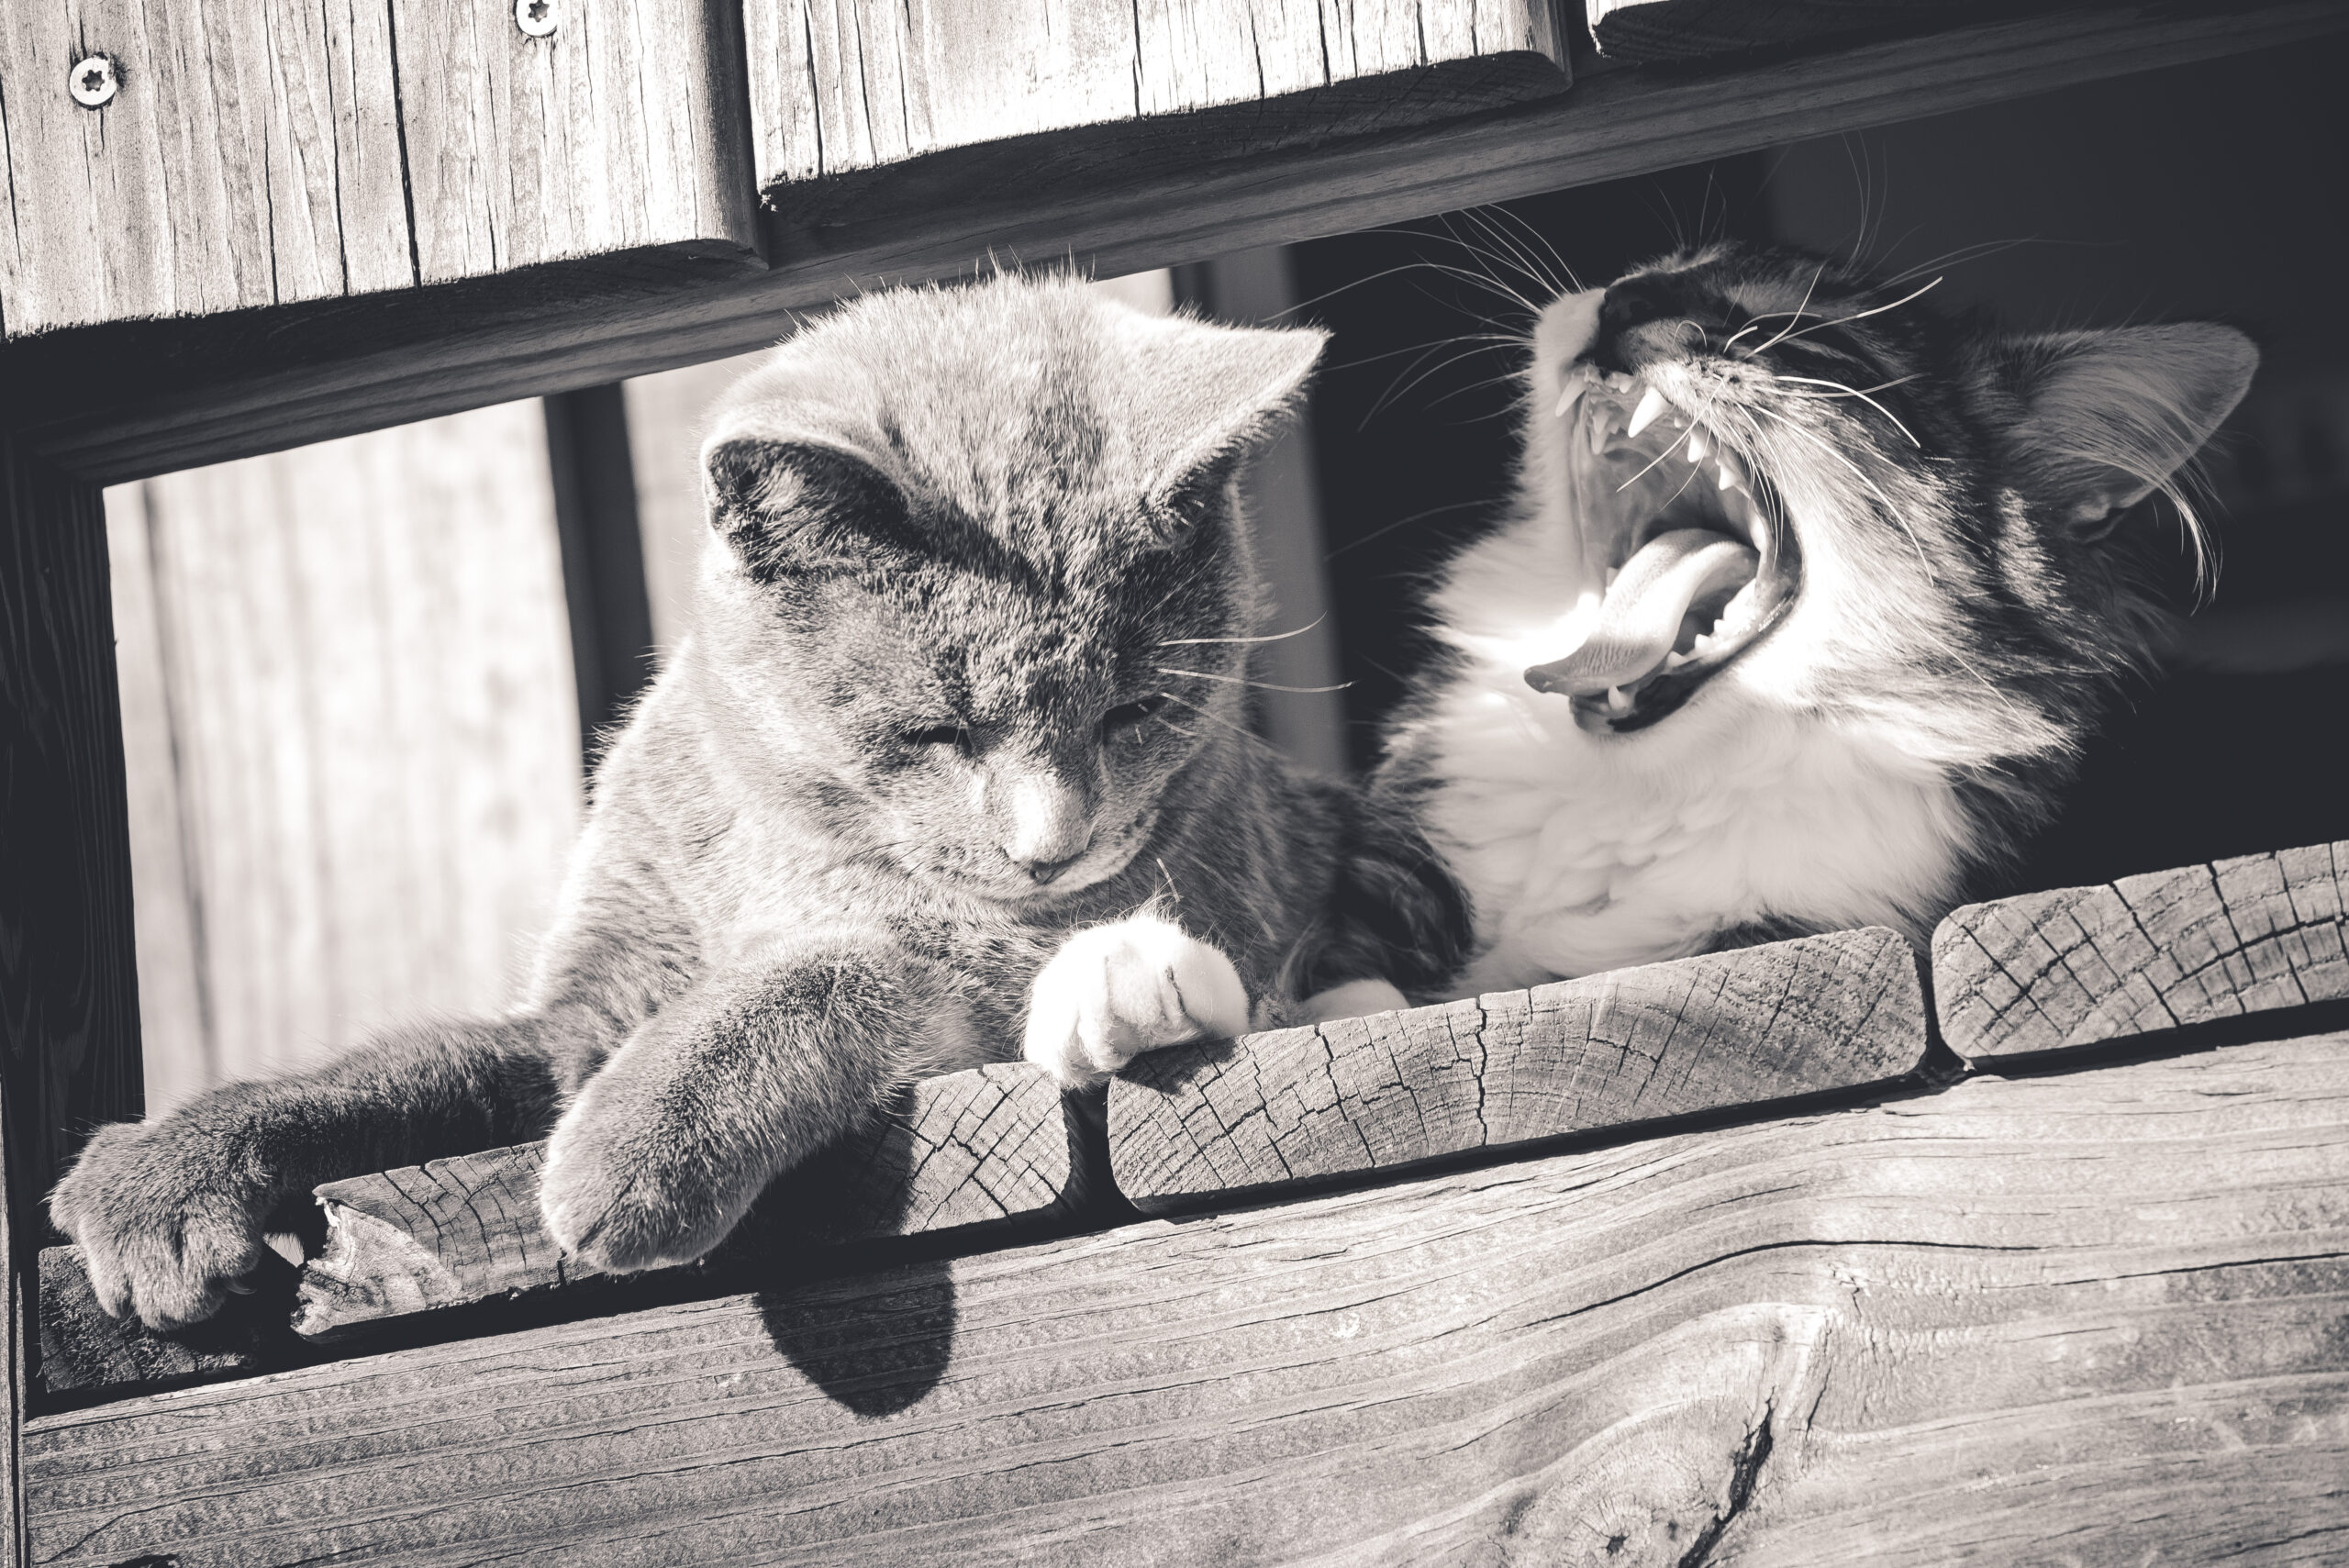 kitty yawning